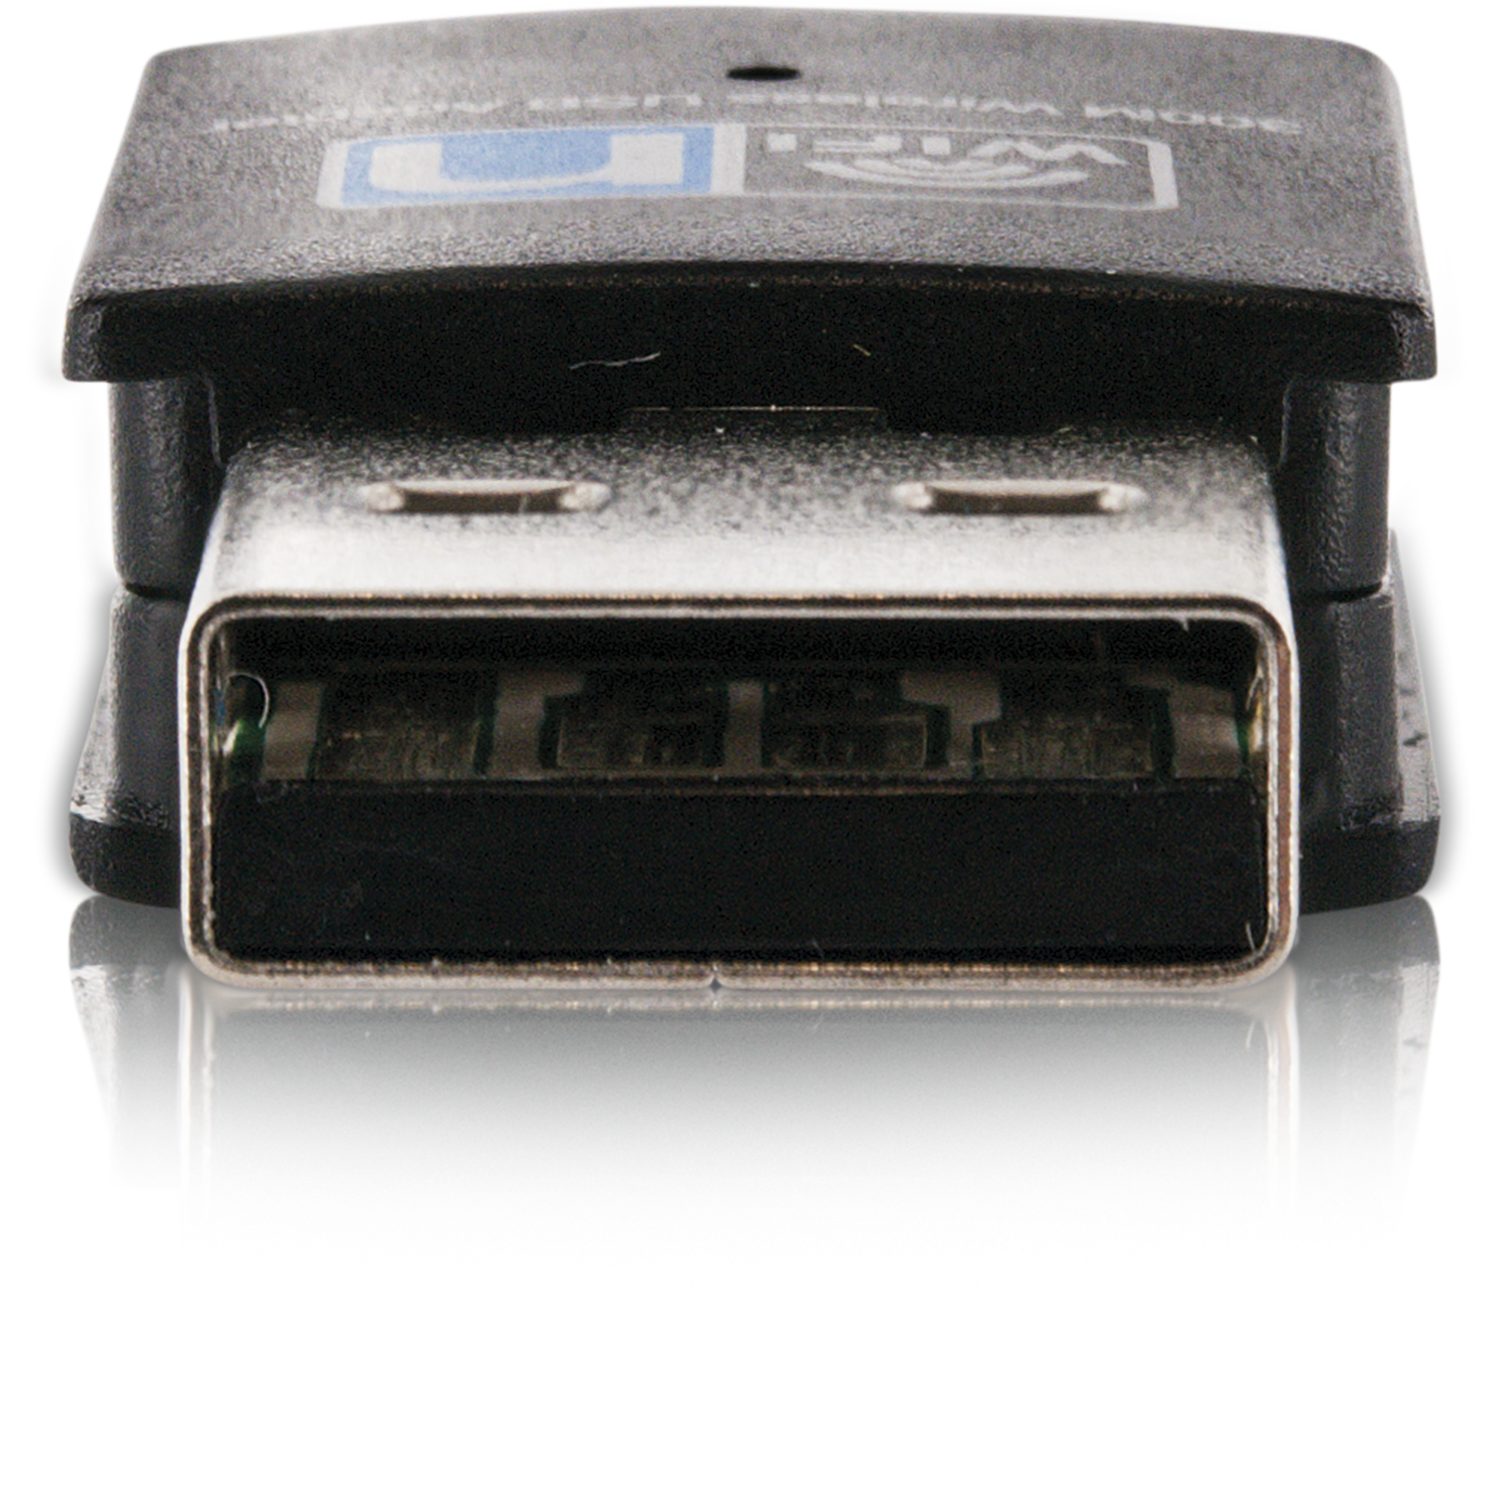 USB A USB-Adapter USB Schwaiger Stecker, DTR300WLAN 2.0 Wireless Adapter